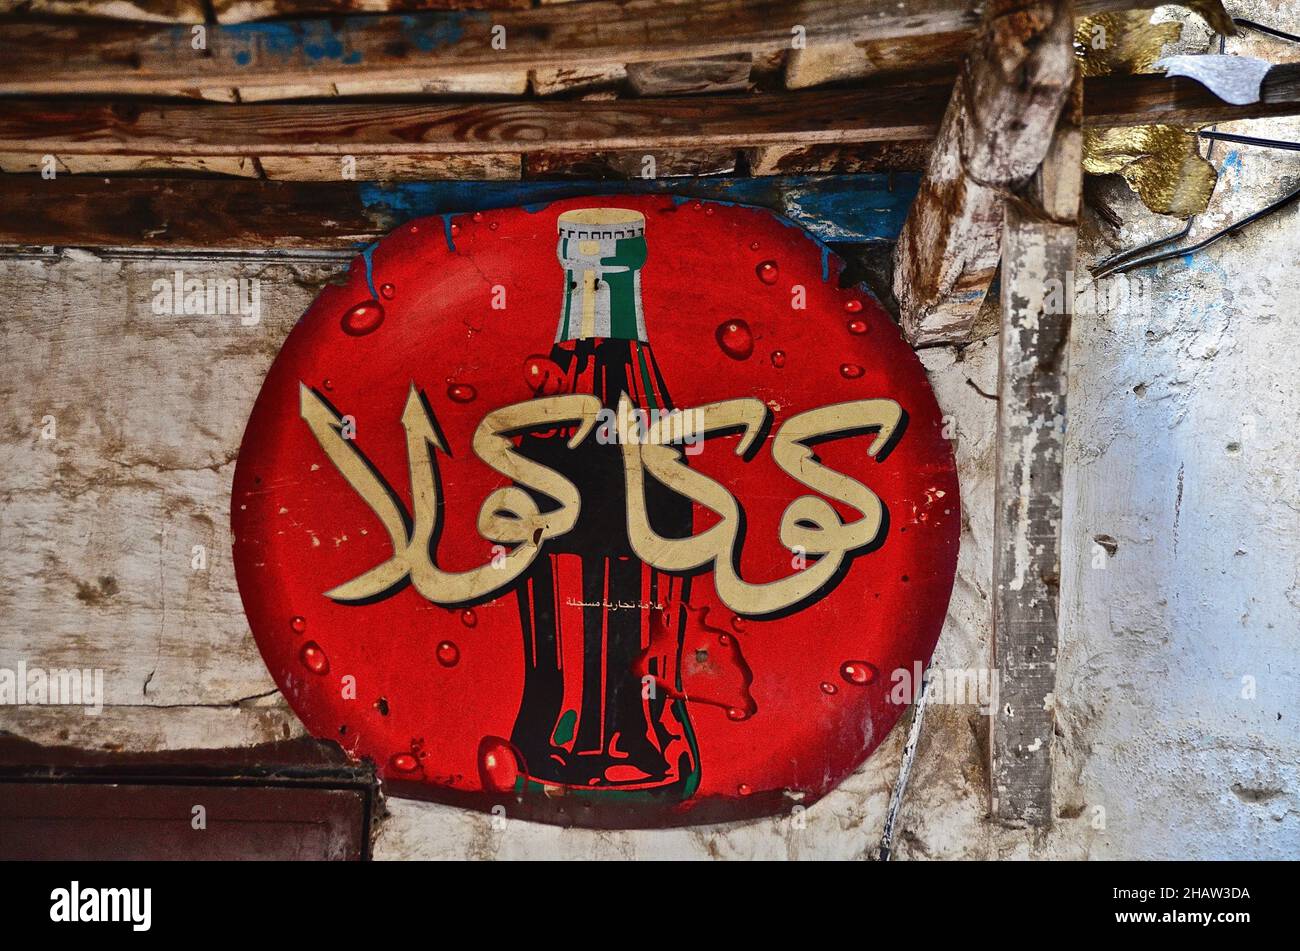 Arabic Coca-Cola sign, Coke advertising in Arabic, round sign with Coke bottle, Tangier-Tetouan-Al Hoceima, Morocco Stock Photo